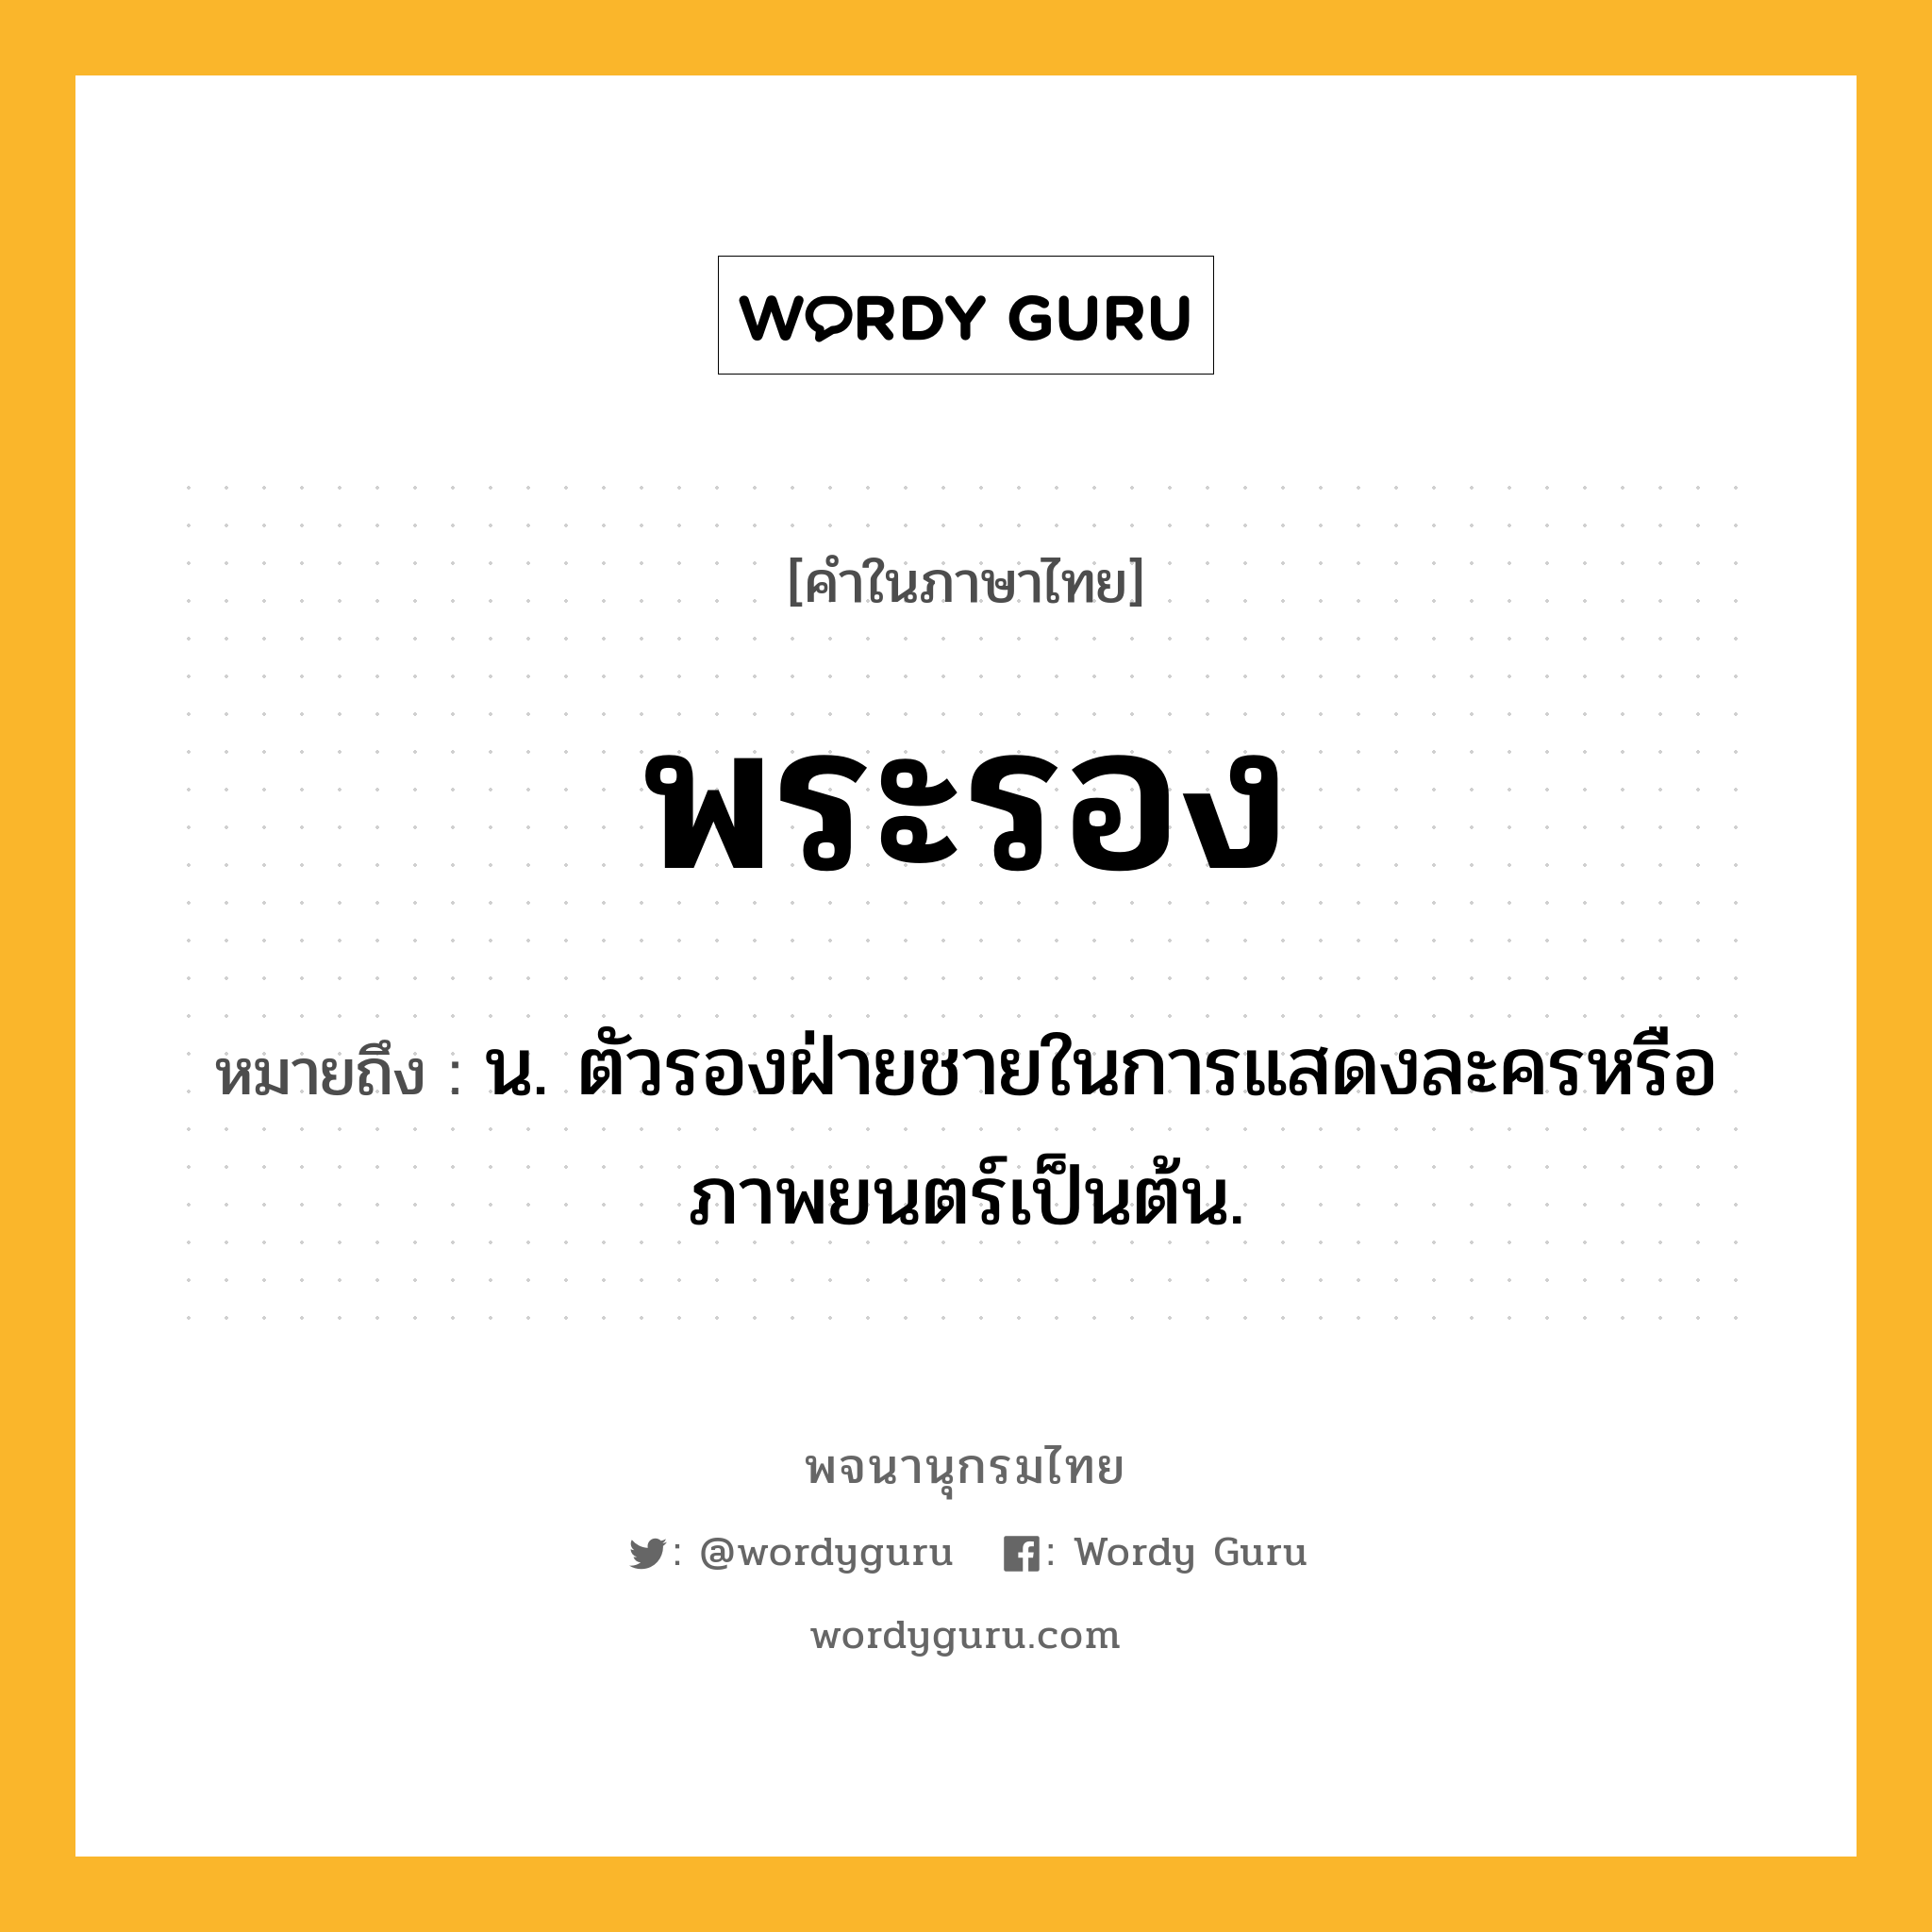 พระรอง ความหมาย หมายถึงอะไร?, คำในภาษาไทย พระรอง หมายถึง น. ตัวรองฝ่ายชายในการแสดงละครหรือภาพยนตร์เป็นต้น.